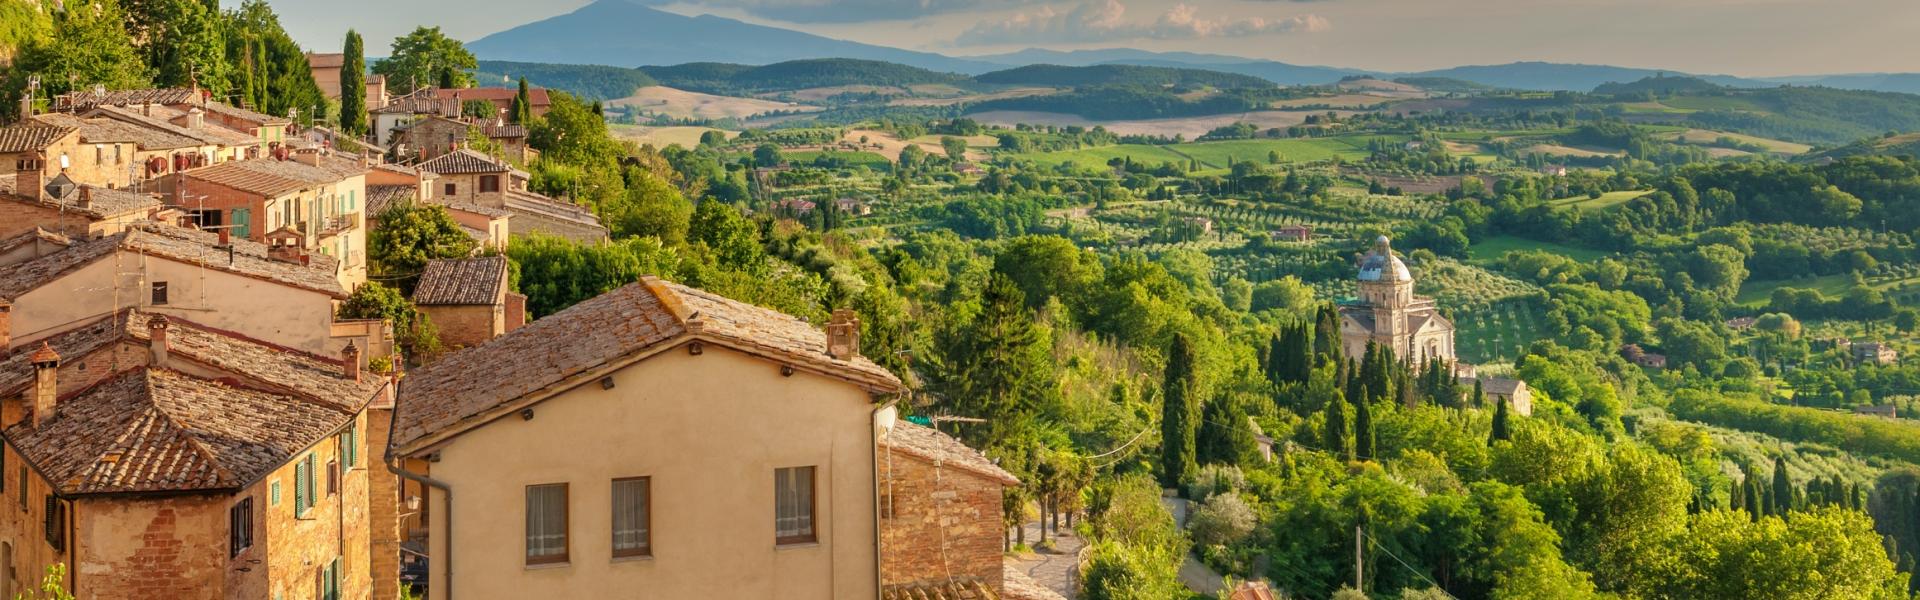 La tua villa in Toscana - Negli angoli più belli della terra - Casamundo